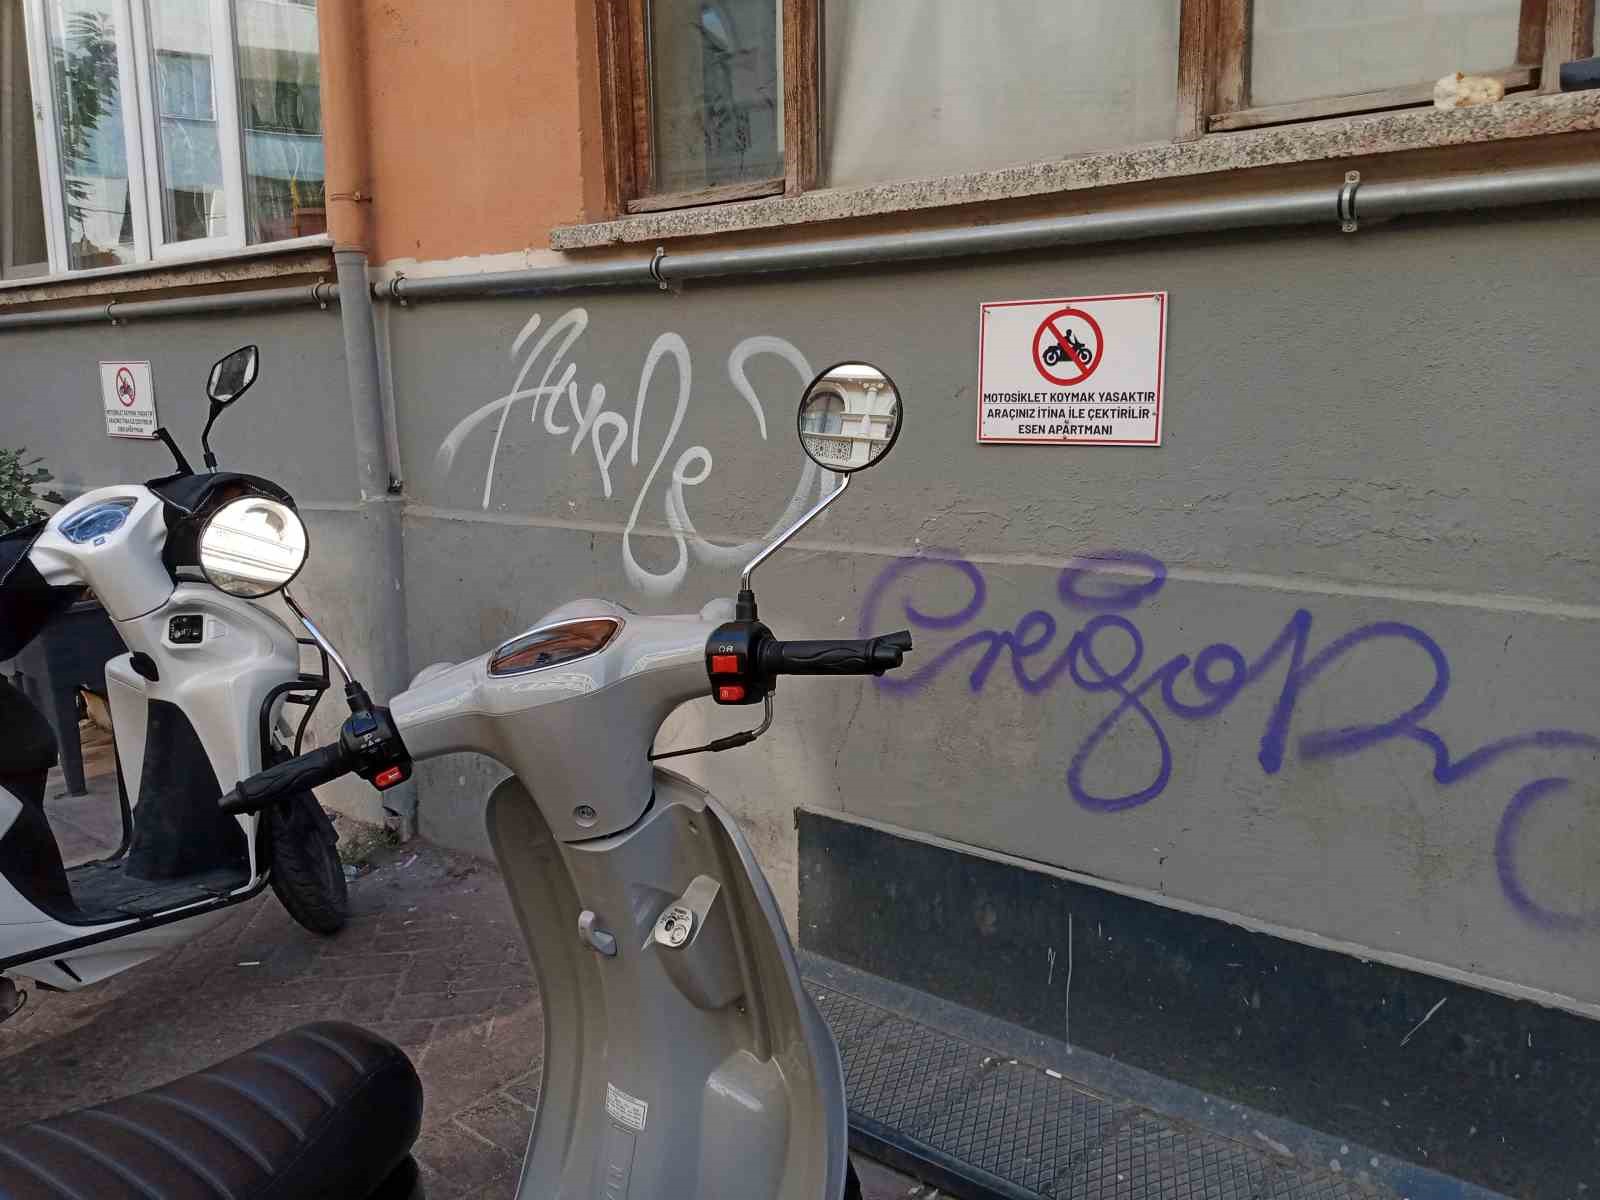 ‘Motosiklet koymak yasaktır’ yazısının tam karşısına park yaptılar